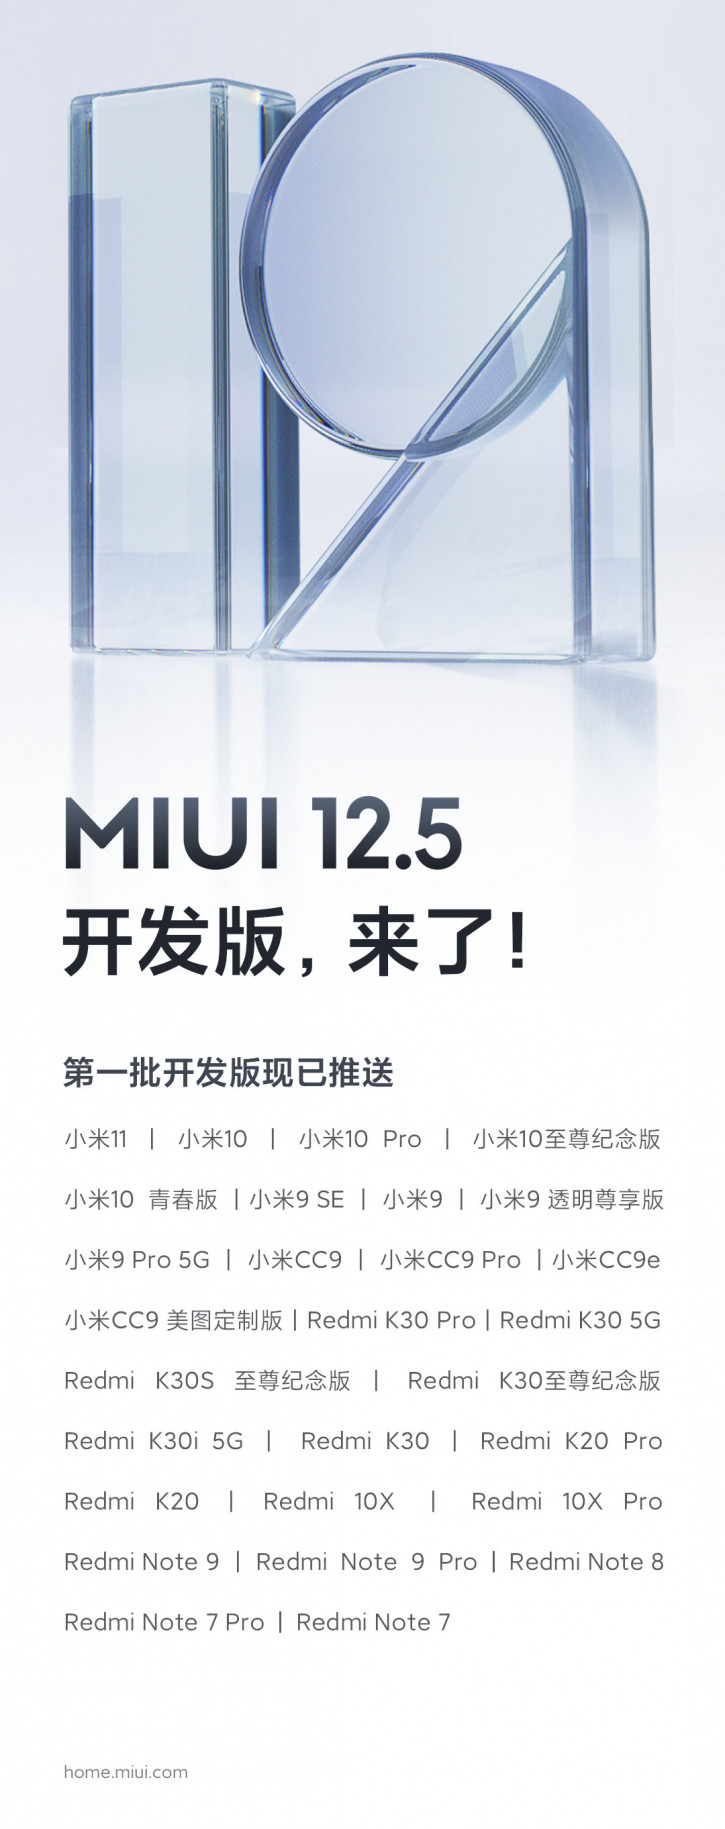 28 моделей Xiaomi і Redmi отримують MIUI 12.5 